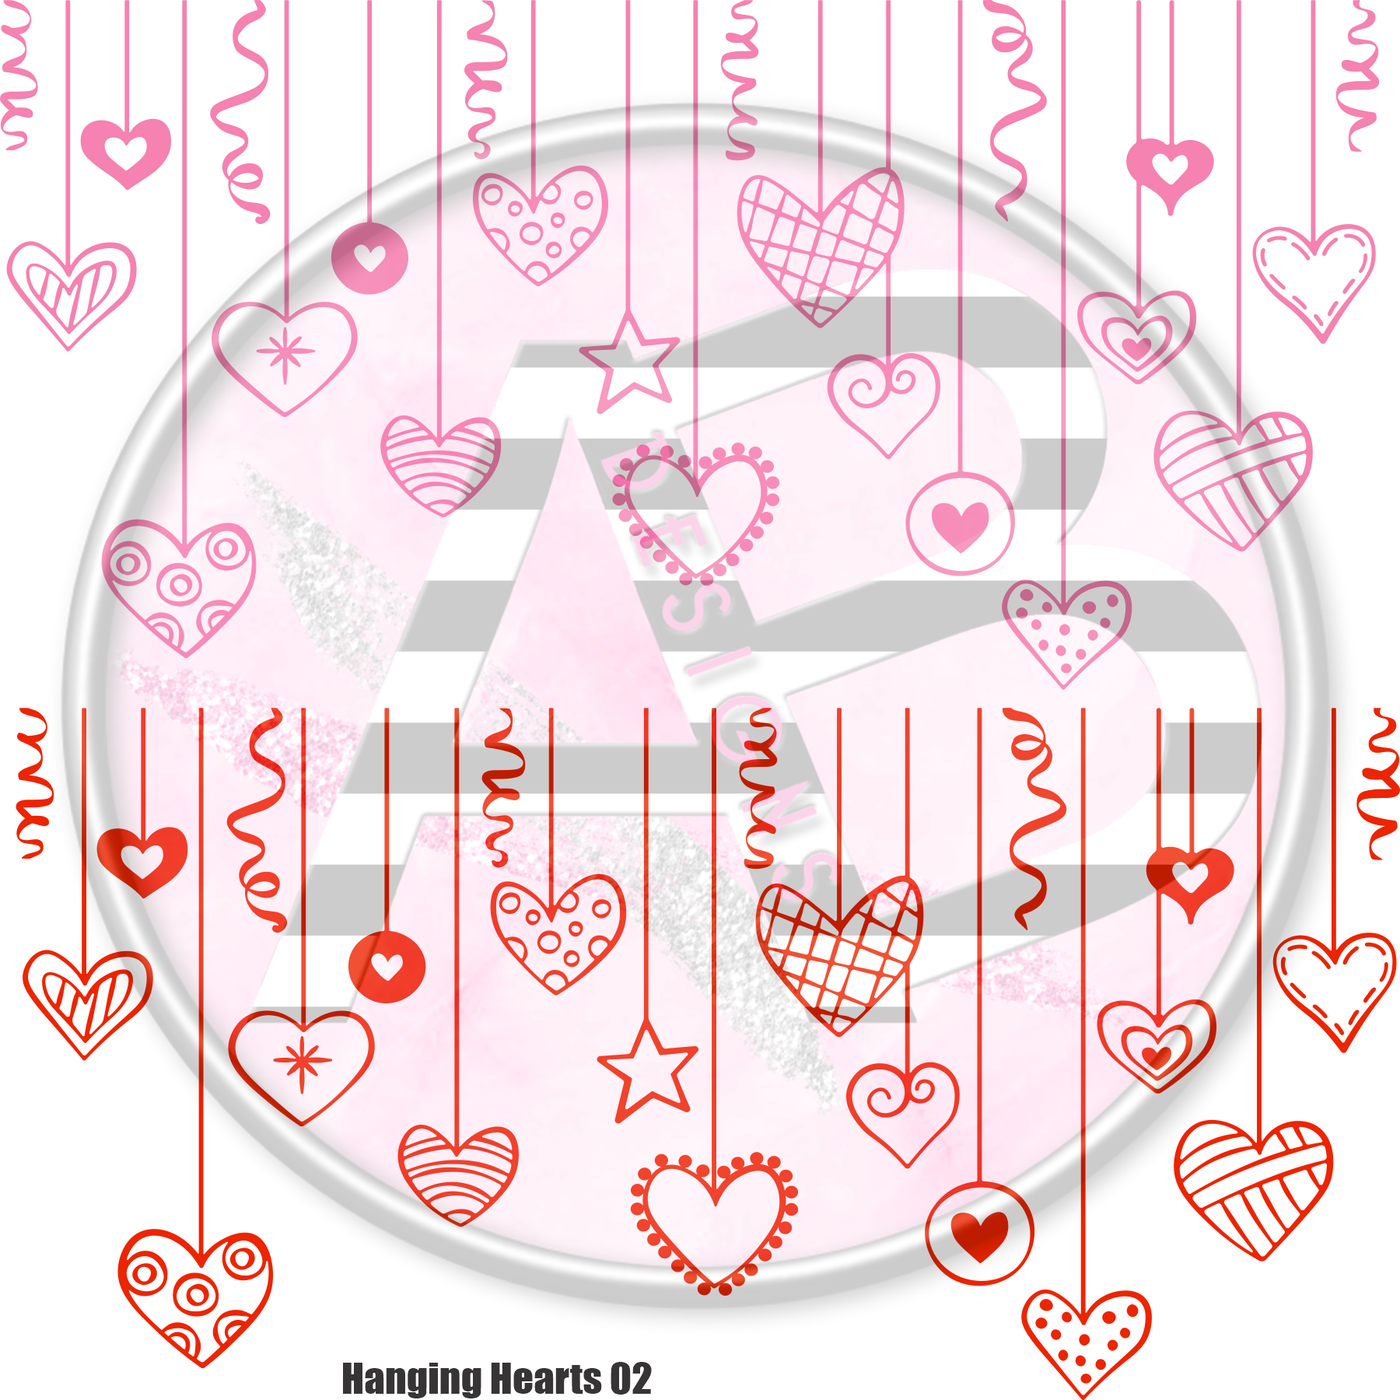 Hanging Hearts 02 Full Sheet 12x12 - Clear Sheet